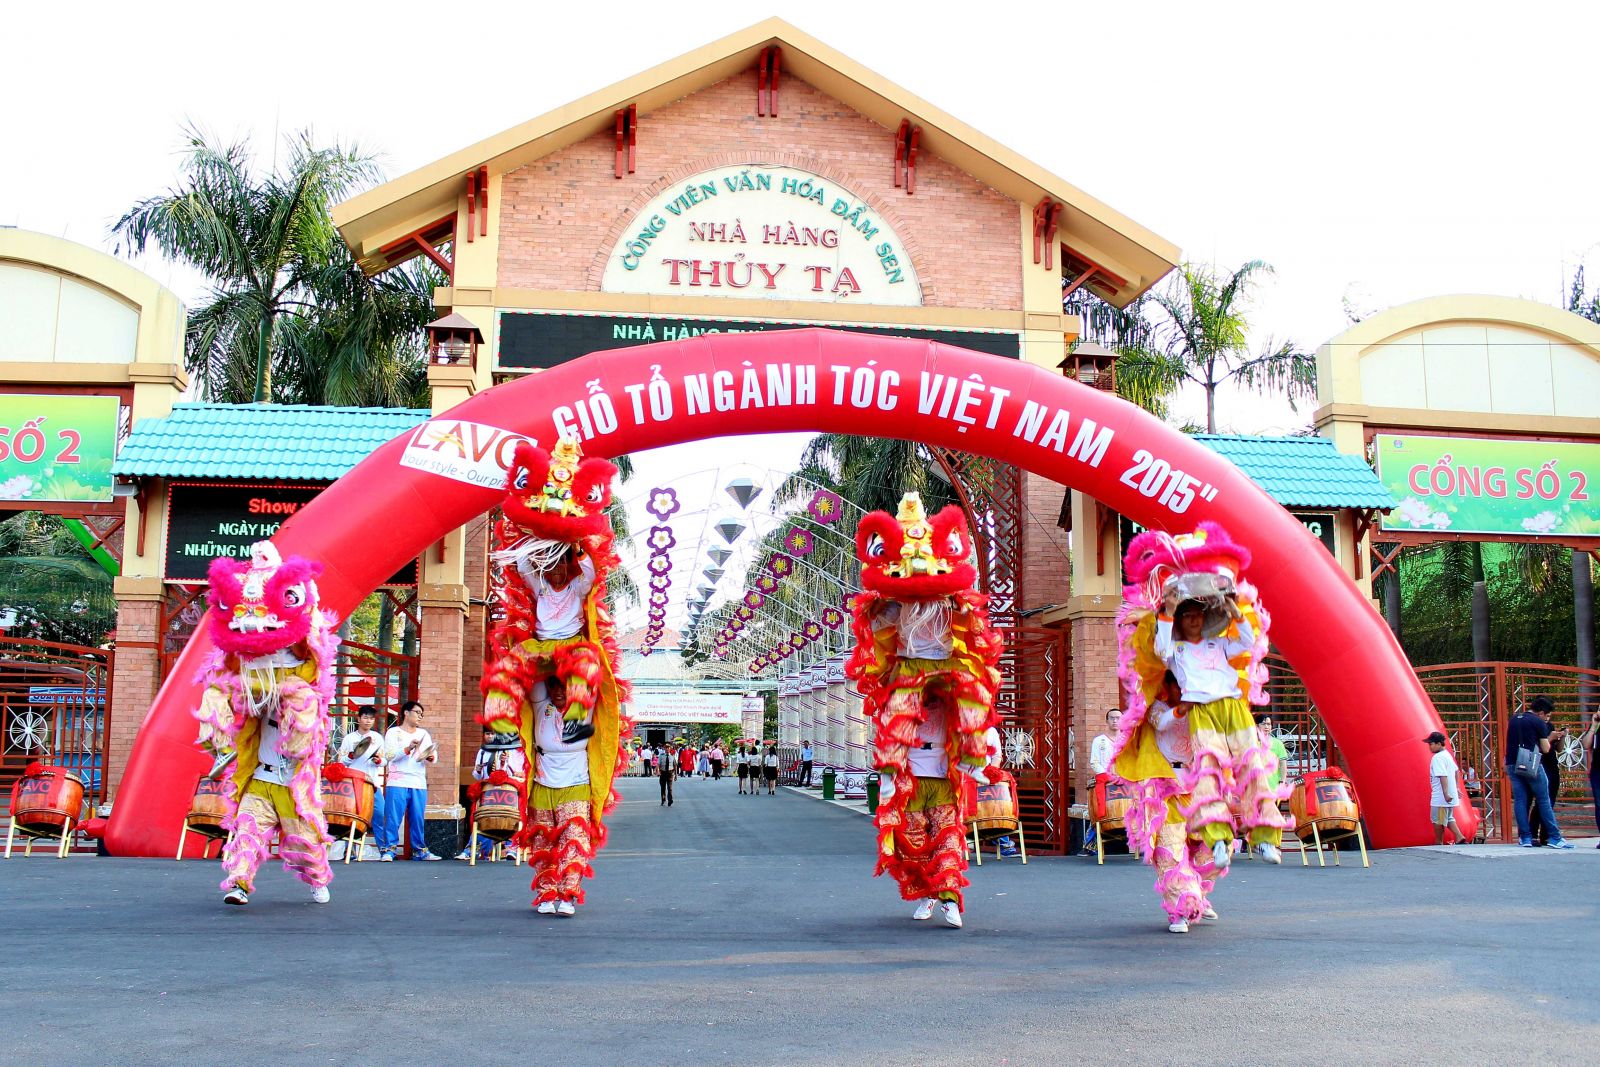 Ngày Giỗ Tổ Ngành Tóc Việt Nam 2015 – CTCP LAVO.